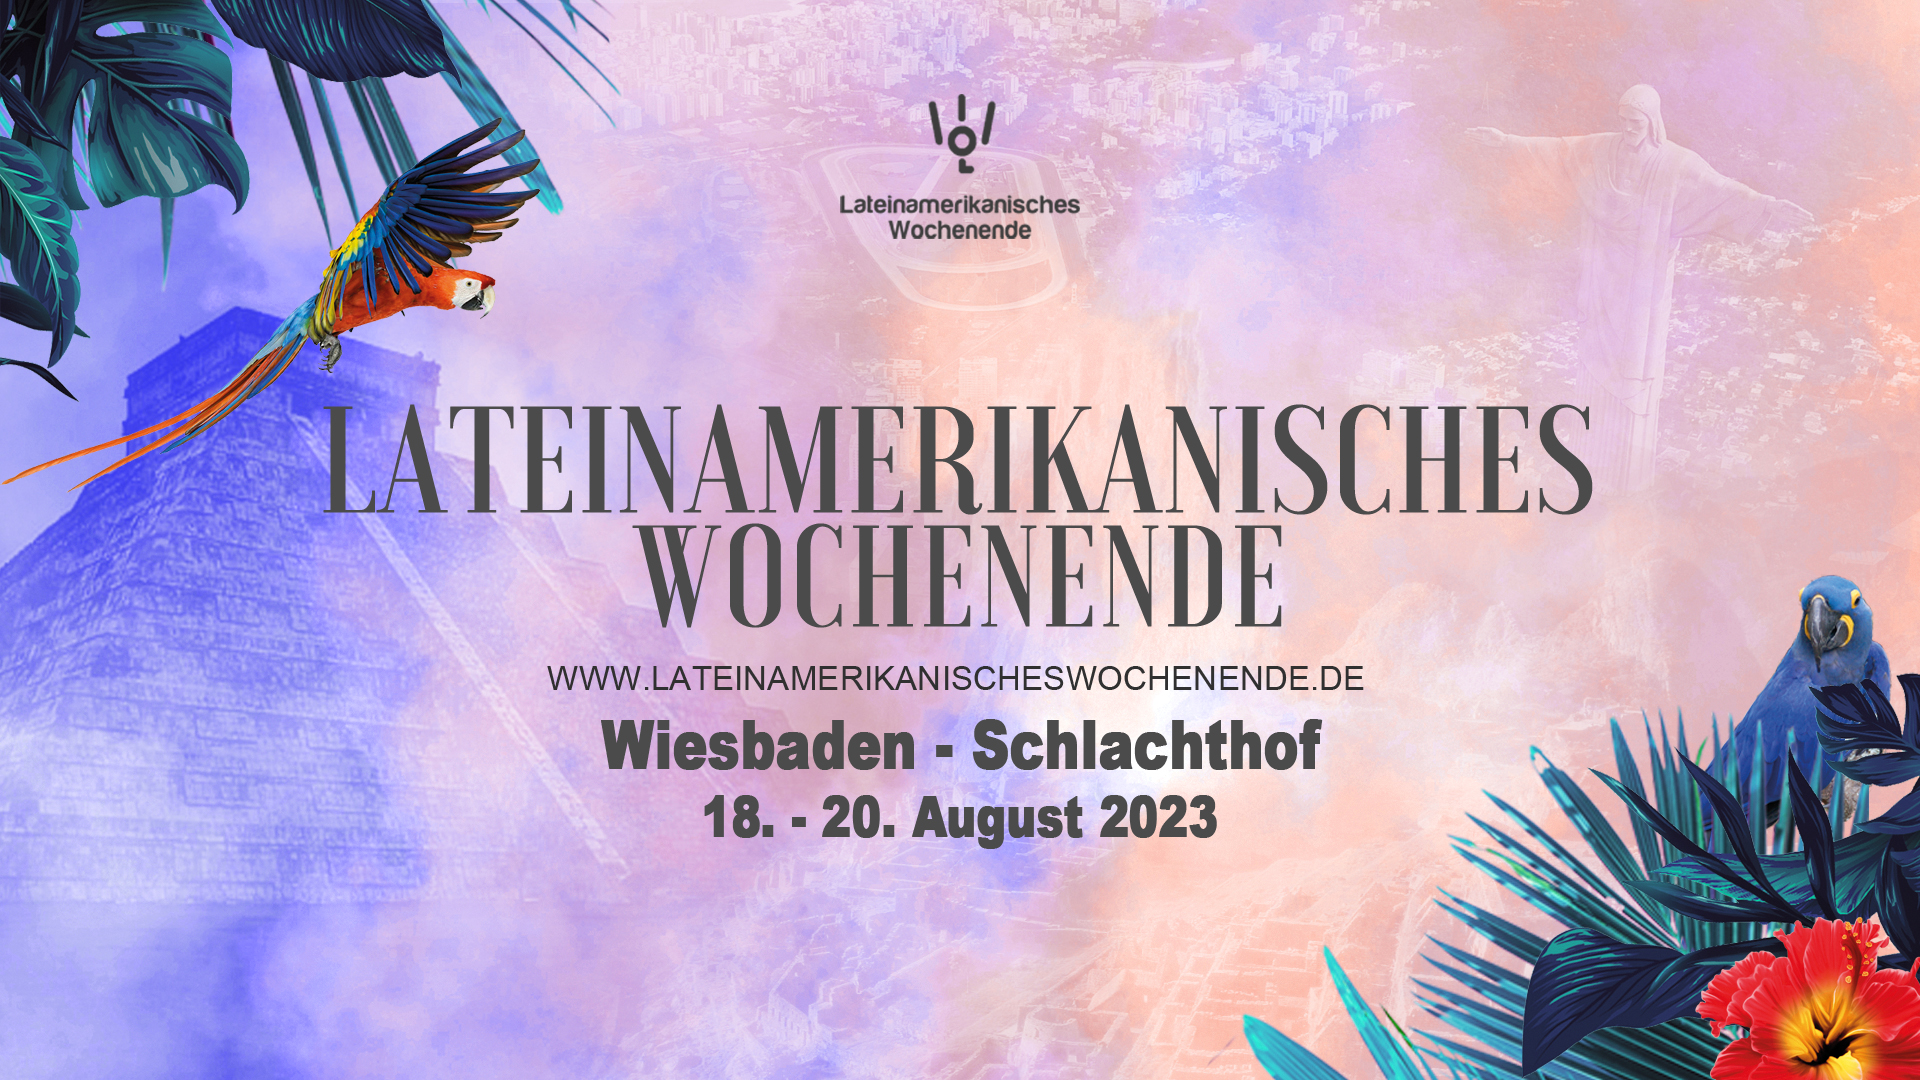 Wiesbaden 18. – 20.08.2023 Lateinamerikanisches Wochenende